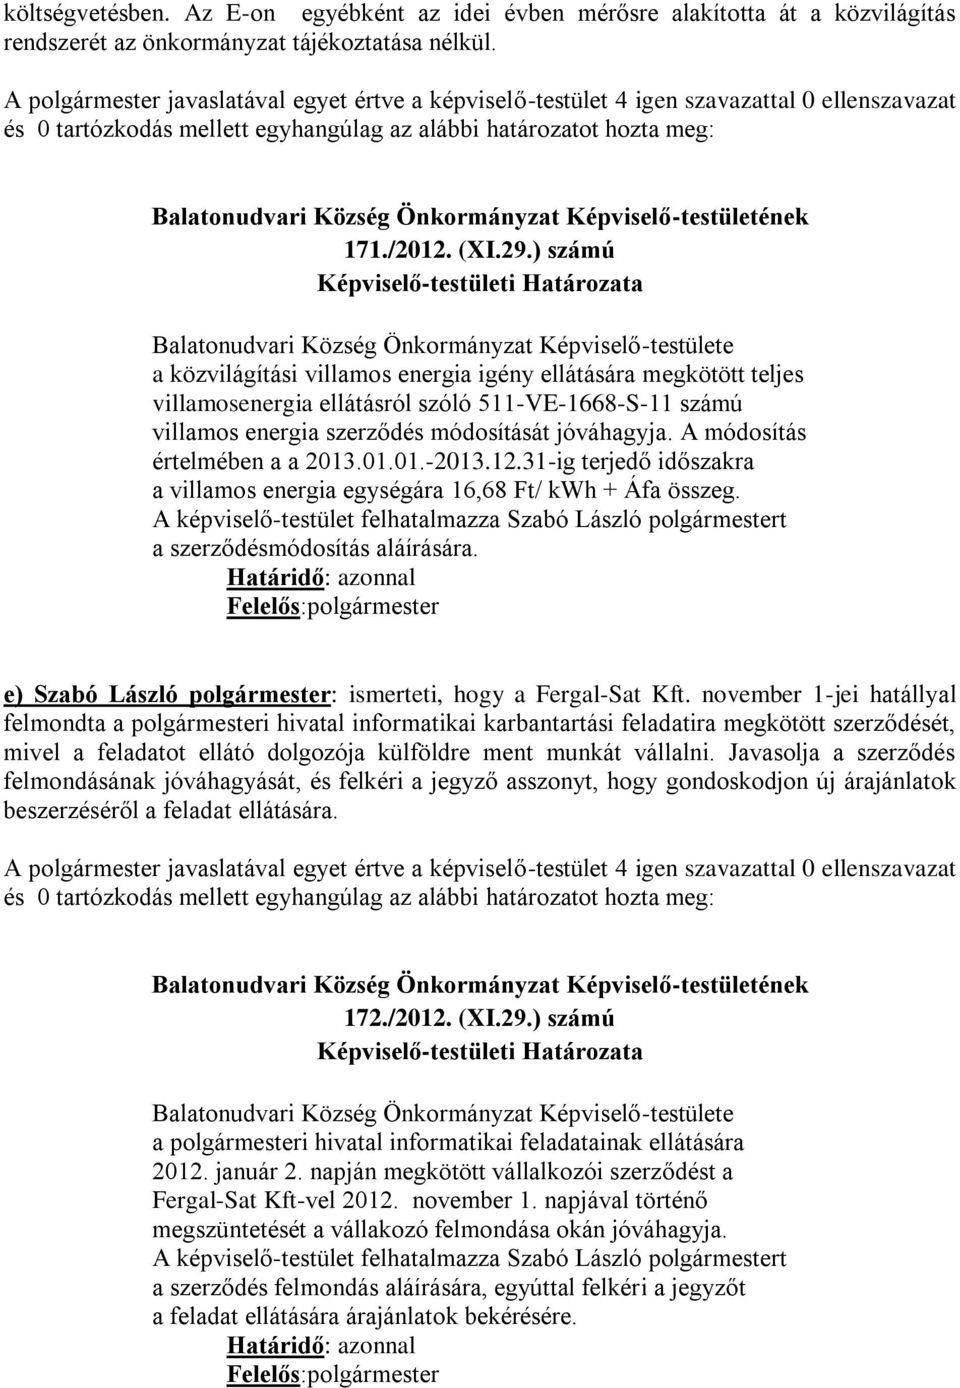 ) számú Balatonudvari Község Önkormányzat Képviselő-testülete a közvilágítási villamos energia igény ellátására megkötött teljes villamosenergia ellátásról szóló 511-VE-1668-S-11 számú villamos